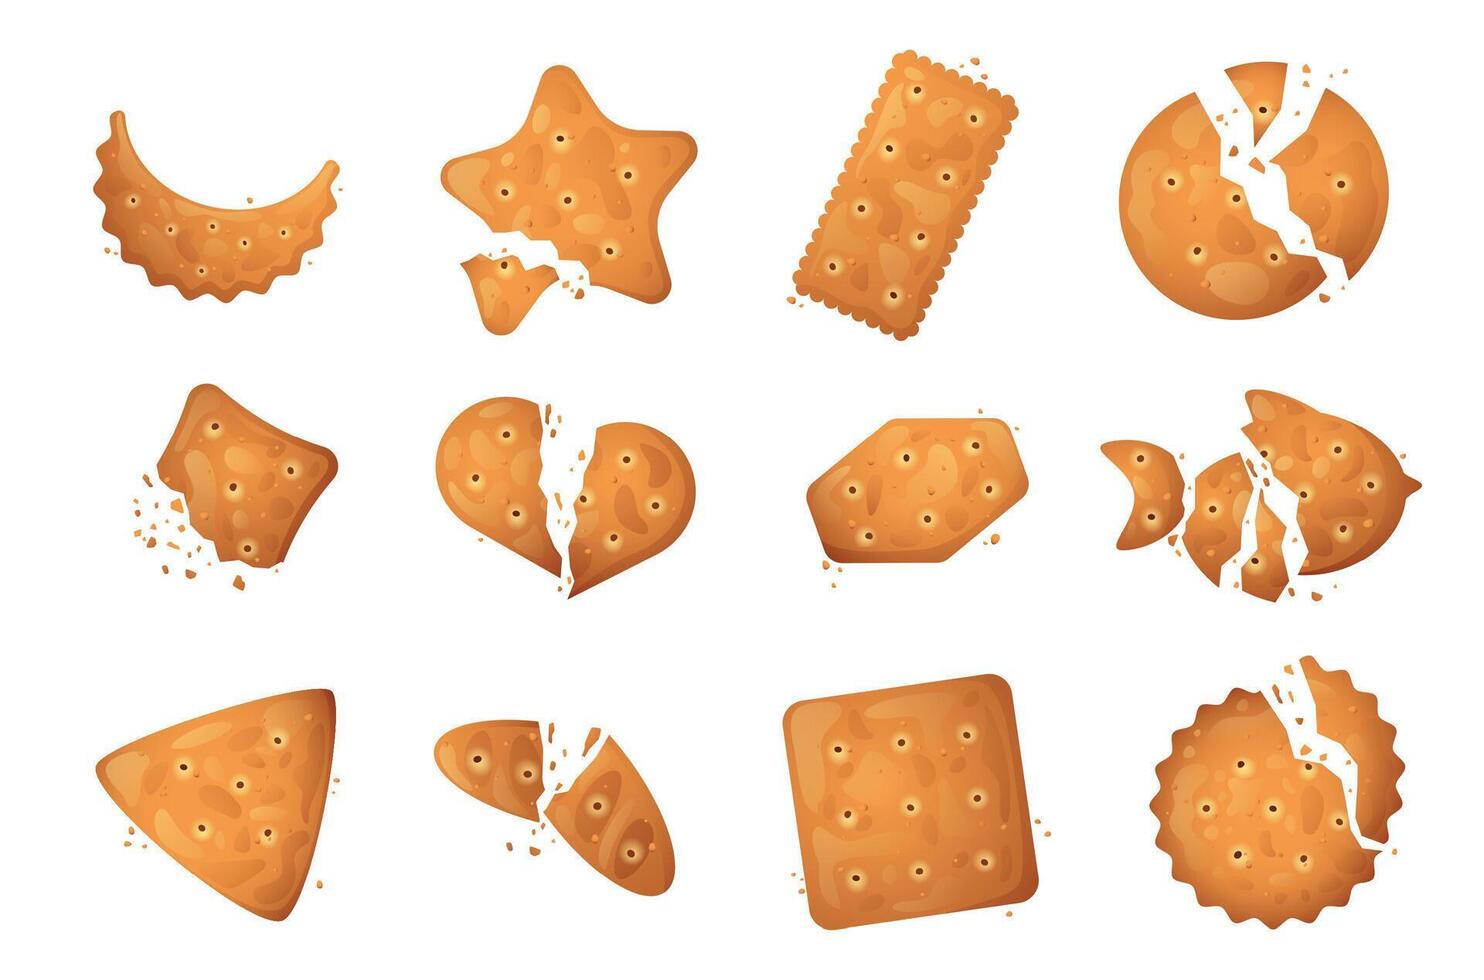 galleta migas colocar. roto galletas galleta galleta bocadillo alimento, dibujos animados roto galletas diferente formas y tamaños vector aislado colección